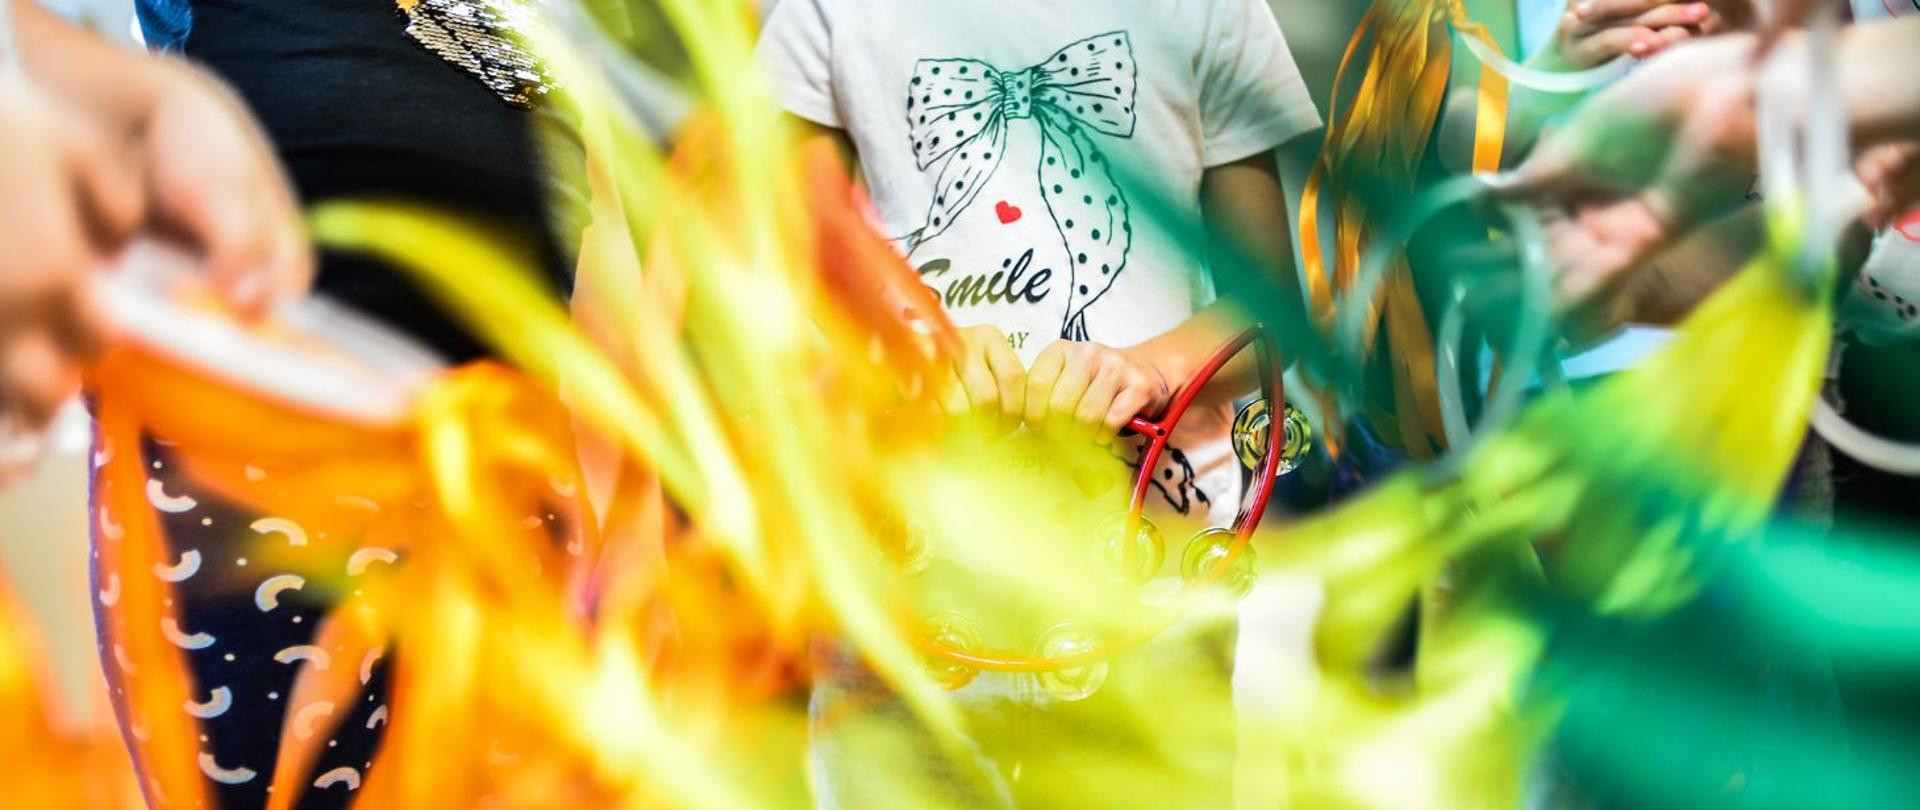 kolorowe zdjęcie przedstawia dzieci bawiące się kolorowymi szarfami, w centrum fotografii dziewczynka w białej koszulce z napisem “smile”